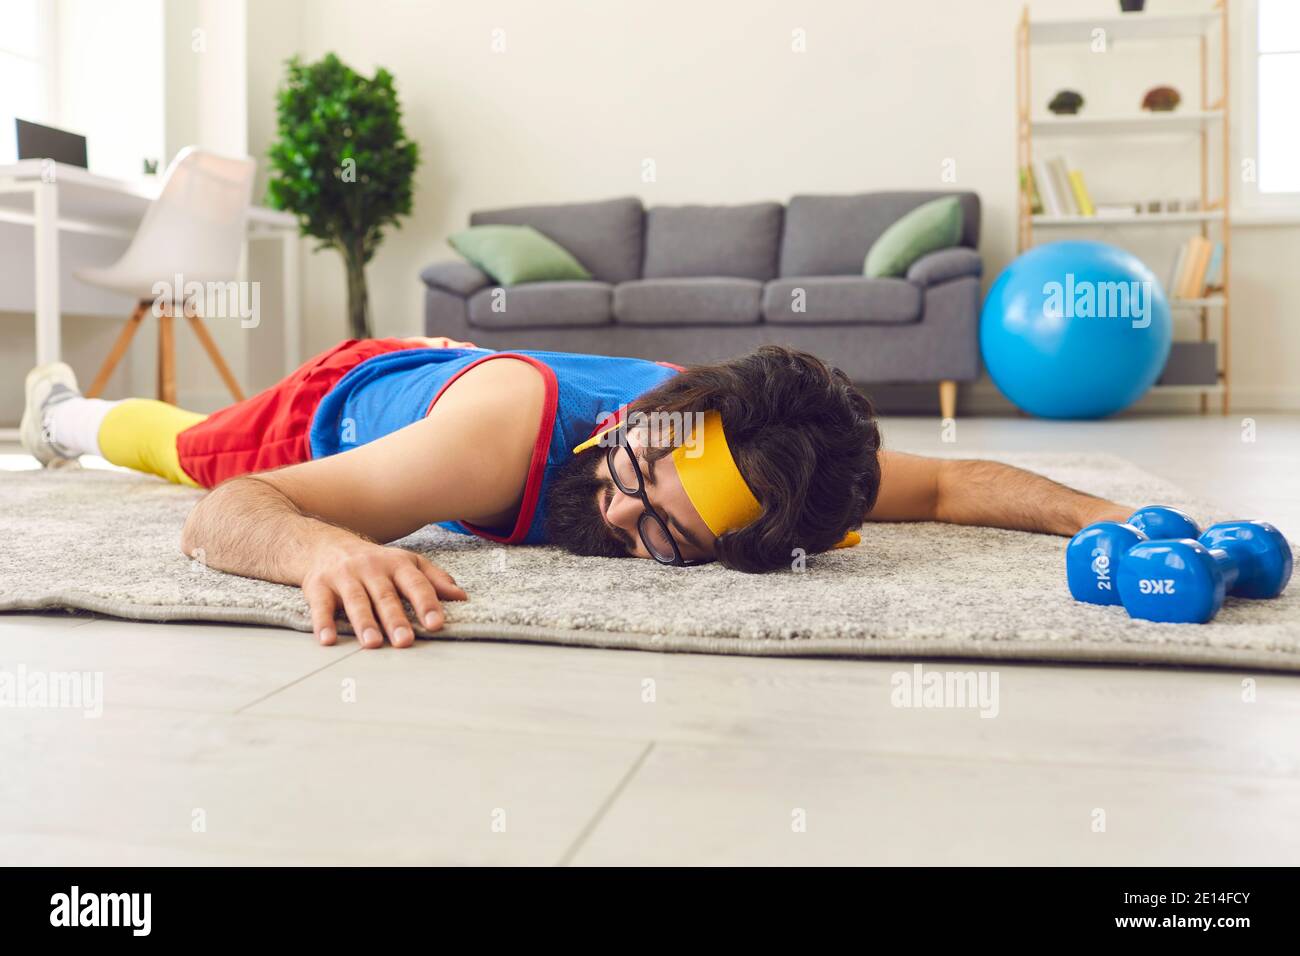 Jeune sportif fatigué et sans motivation couché sur le sol après avoir abandonner entraînement physique avec haltères Banque D'Images